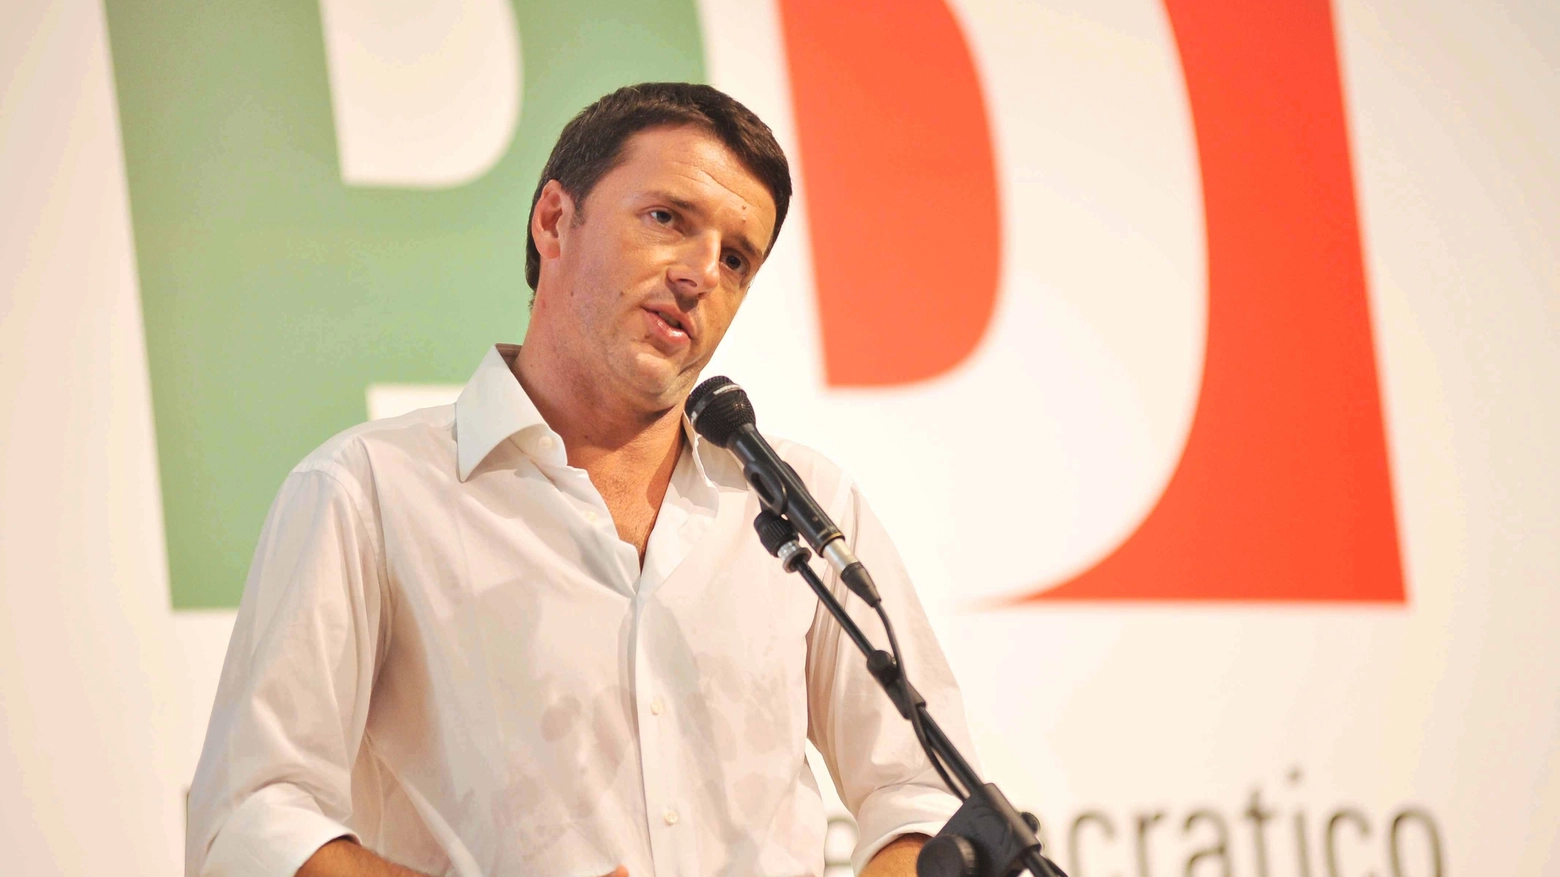 Matteo Renzi ha scelto Imola per la Festa Nazionale dell'Unità